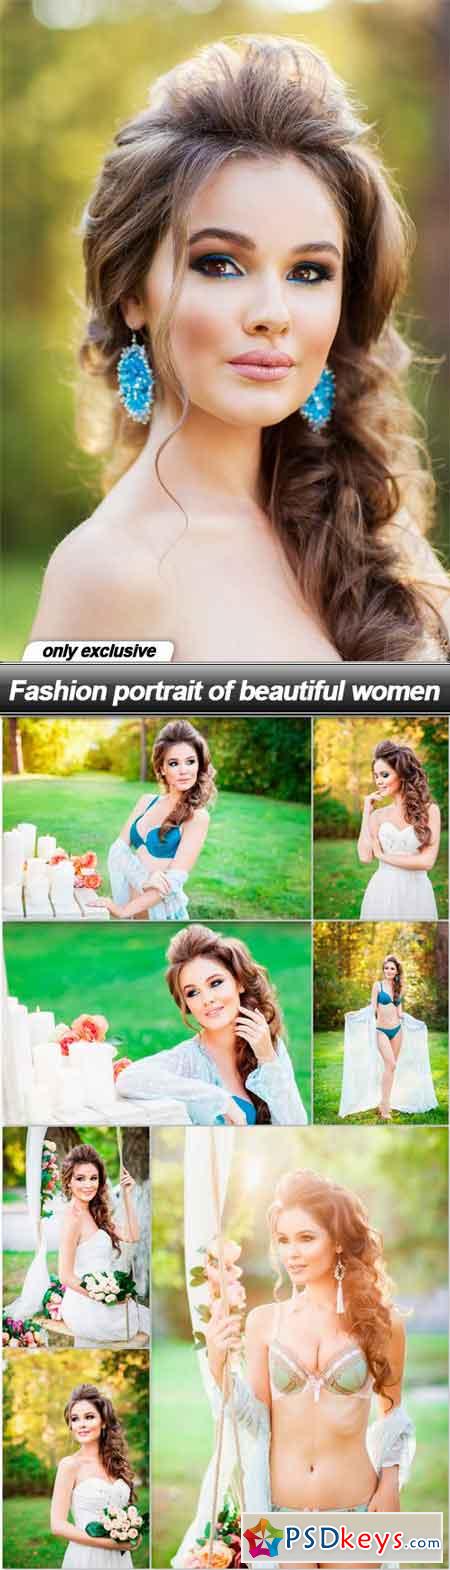 Fashion portrait of beautiful women - 8 UHQ JPEG